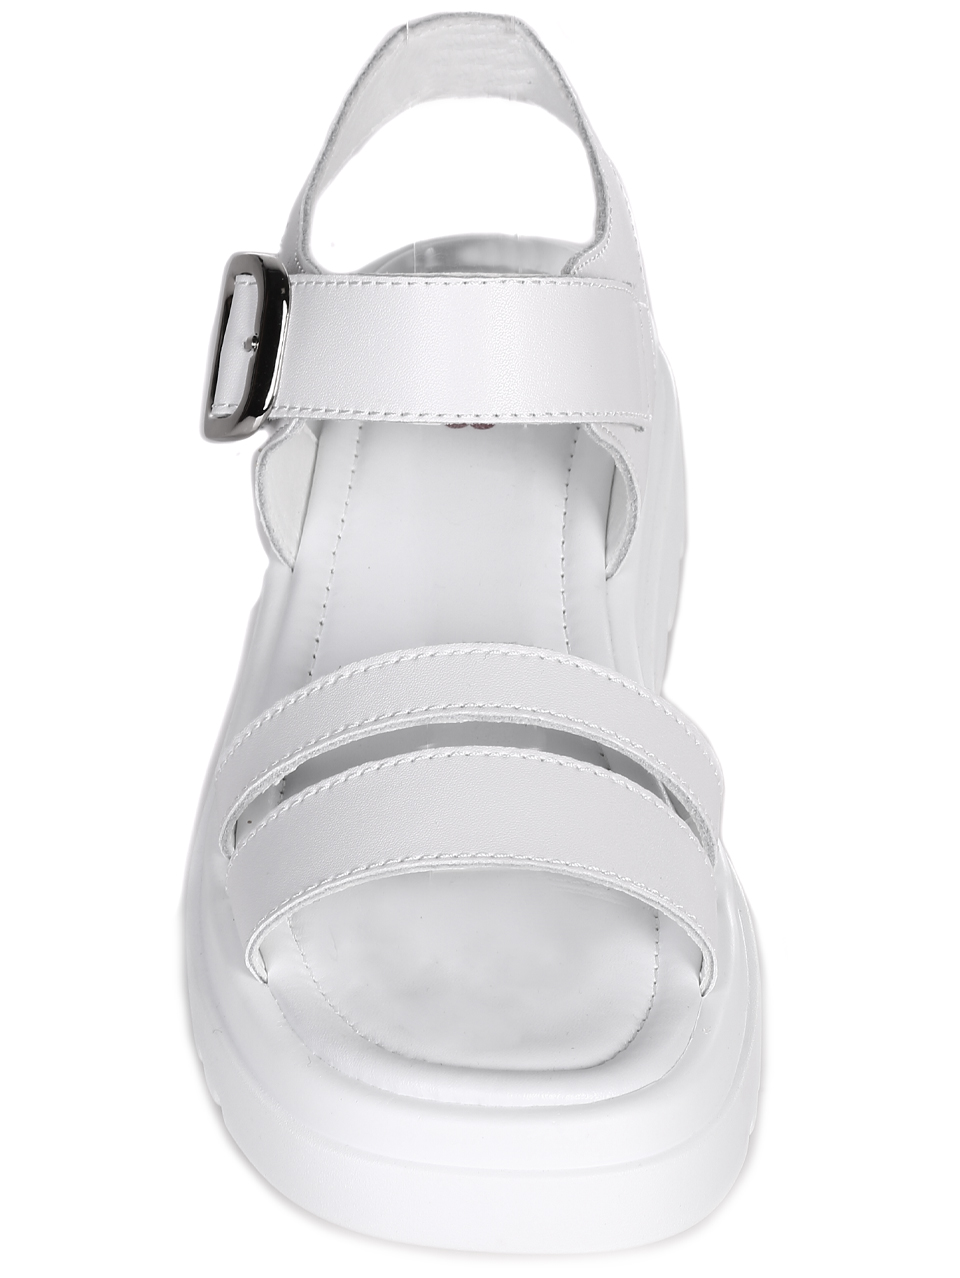 Ежедневни дамски сандали на платформа от естествена кожа 4AF-23143 white